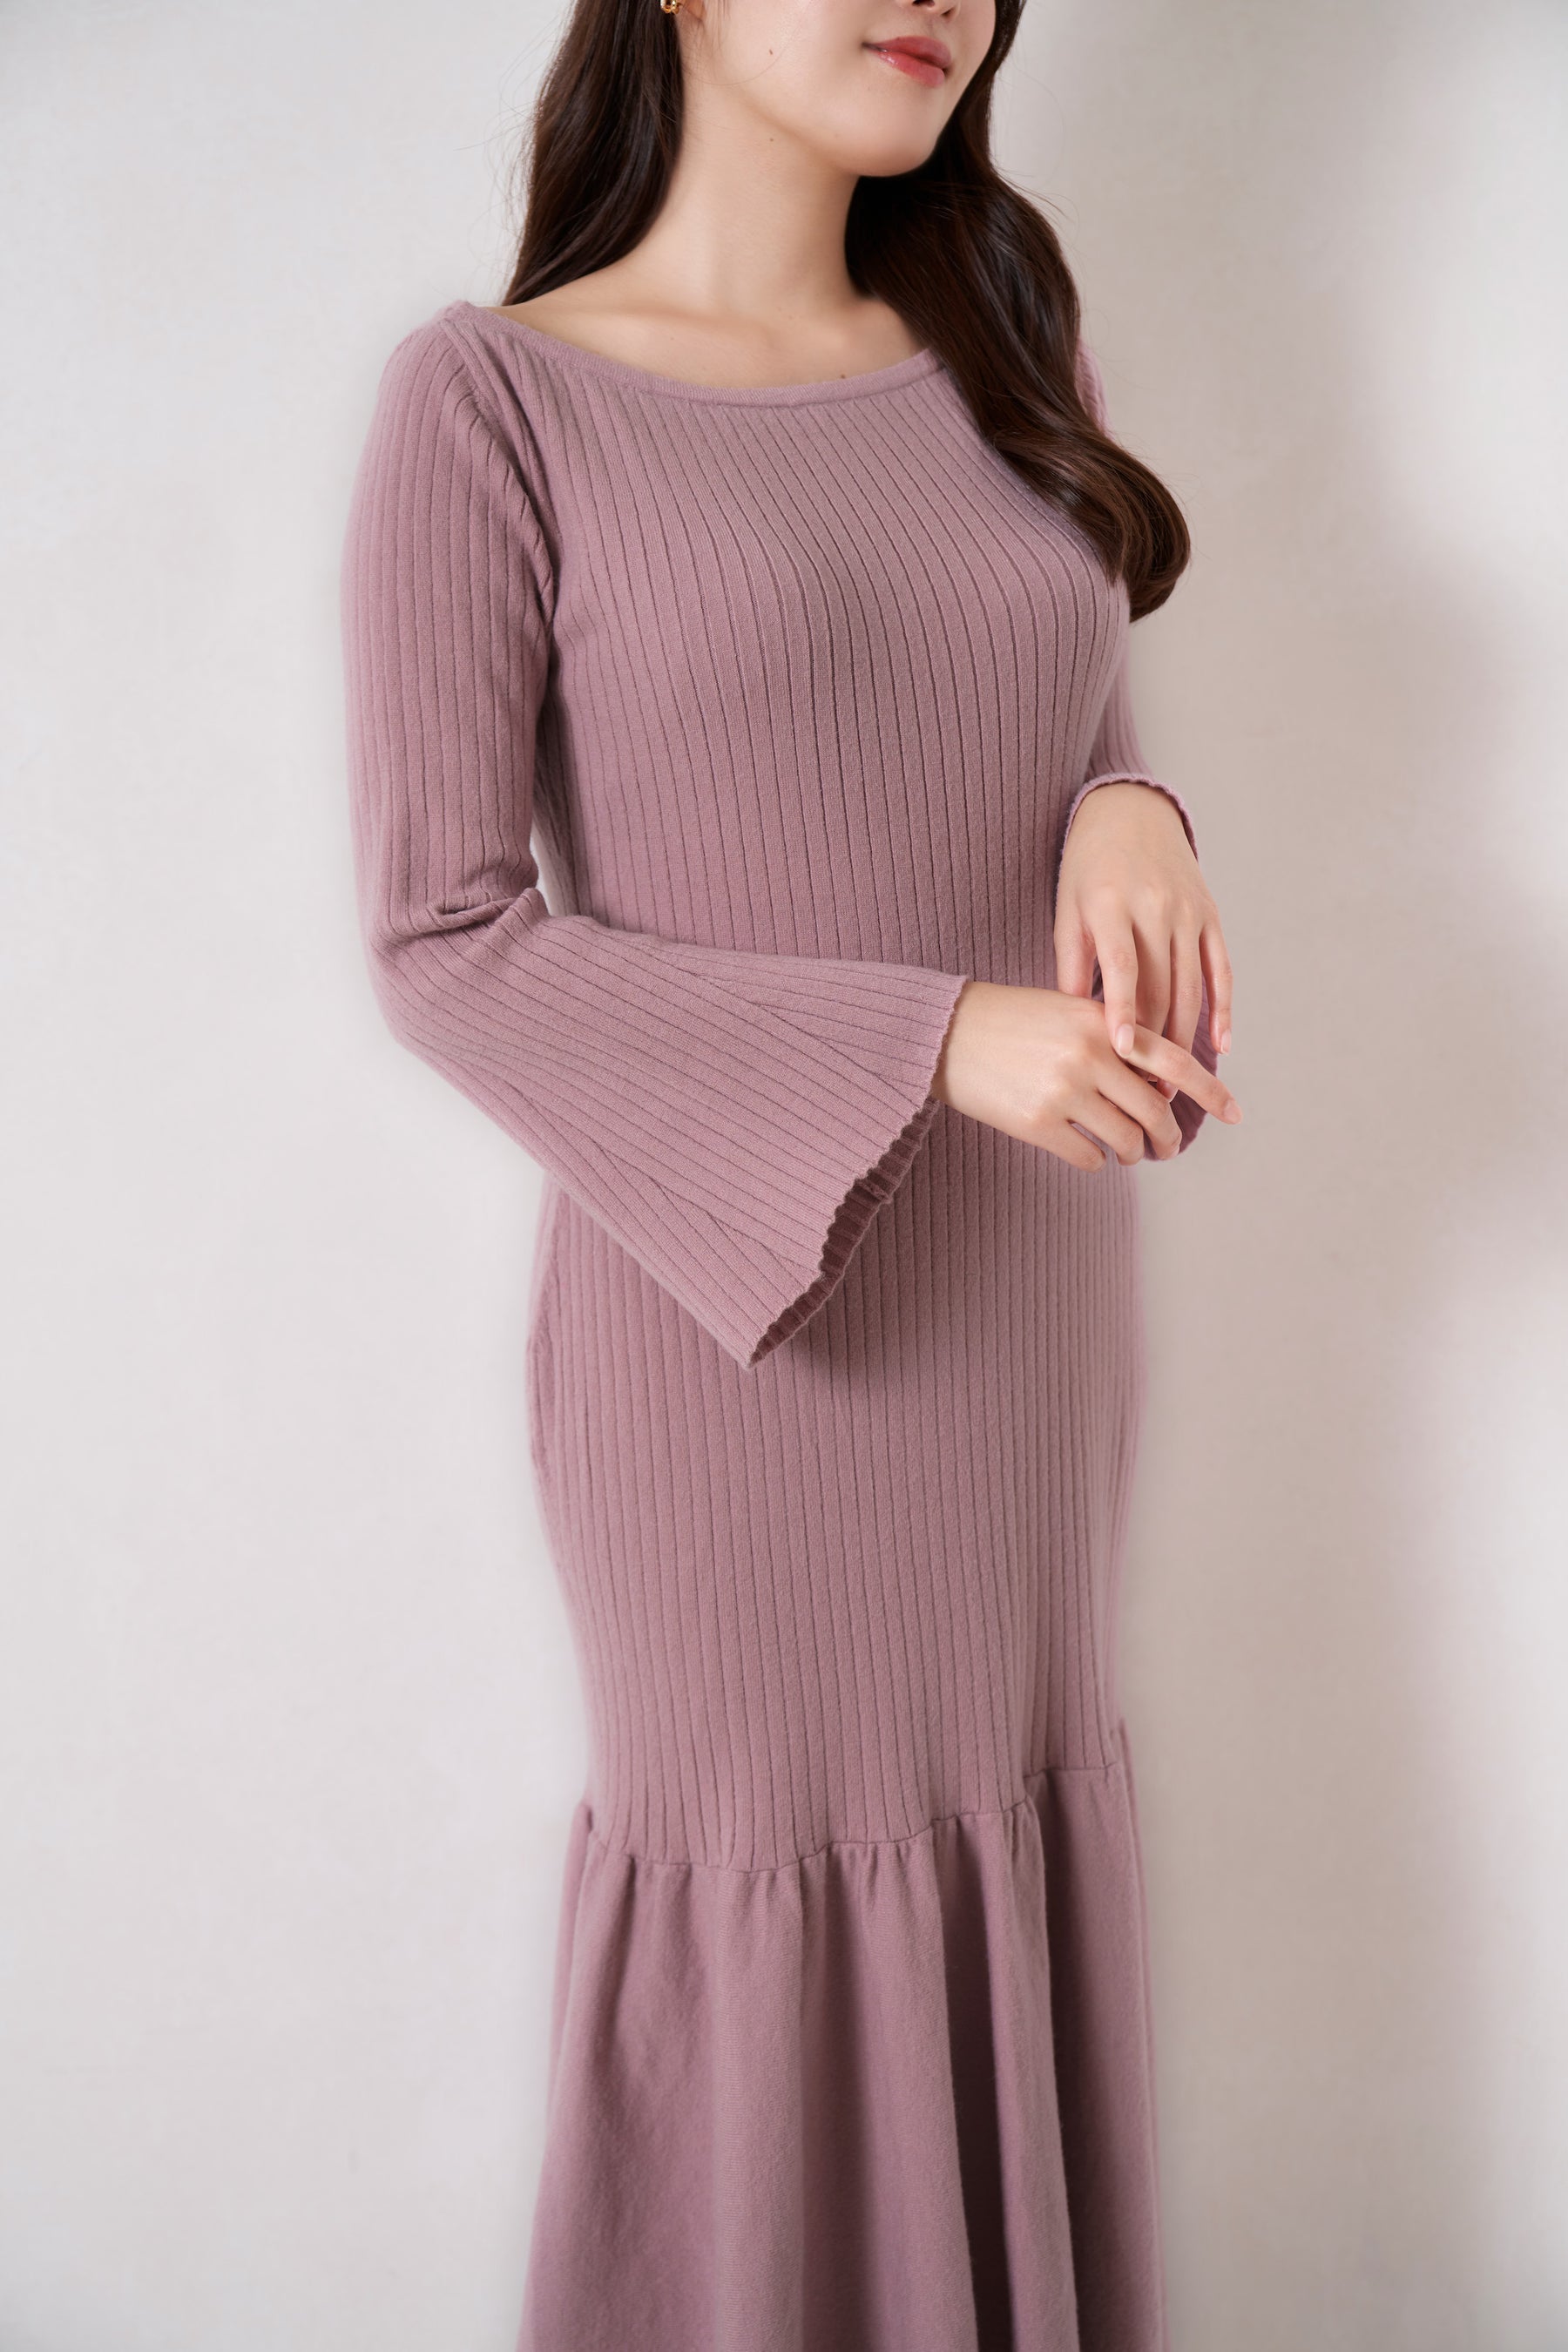 色mauvepinkFlare Sleeve Ruffle Knit Dress